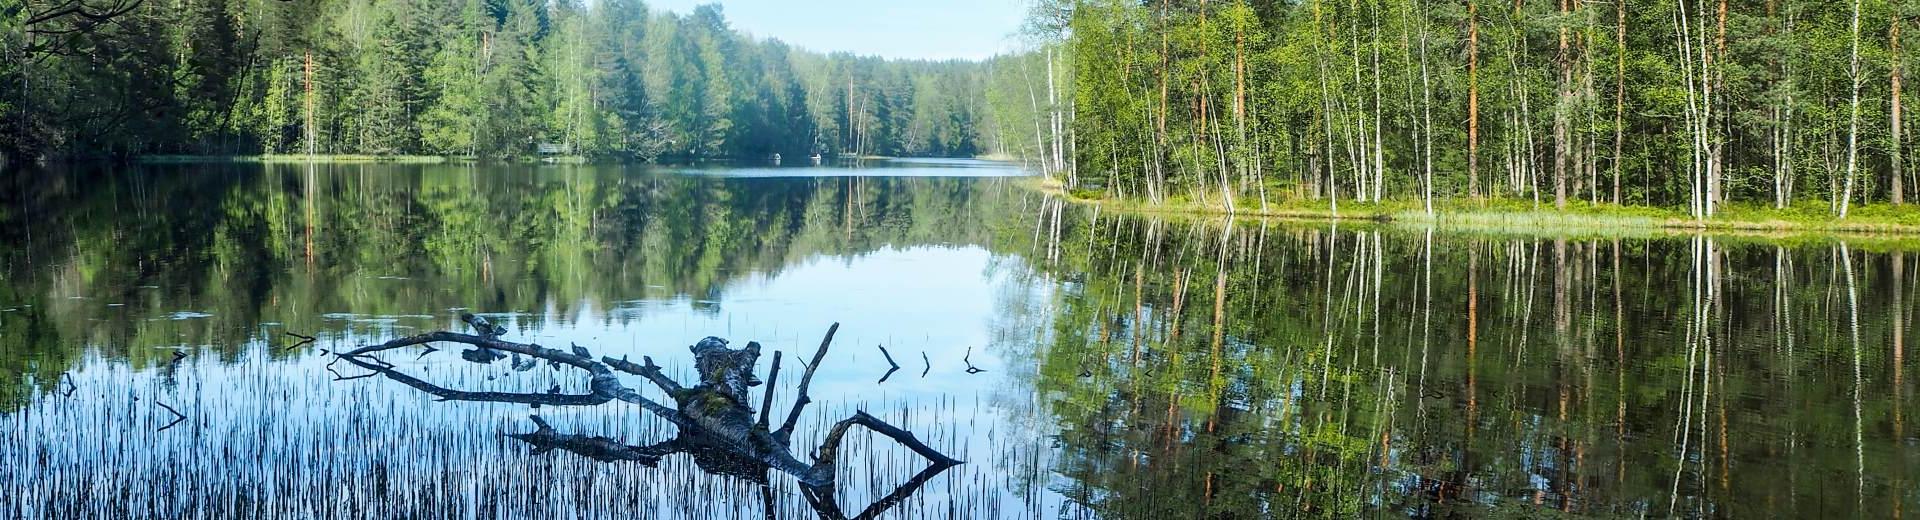 Vakantie in Midden-Zweden: Geniet van het stadse leven en de prachtige natuur - Casamundo